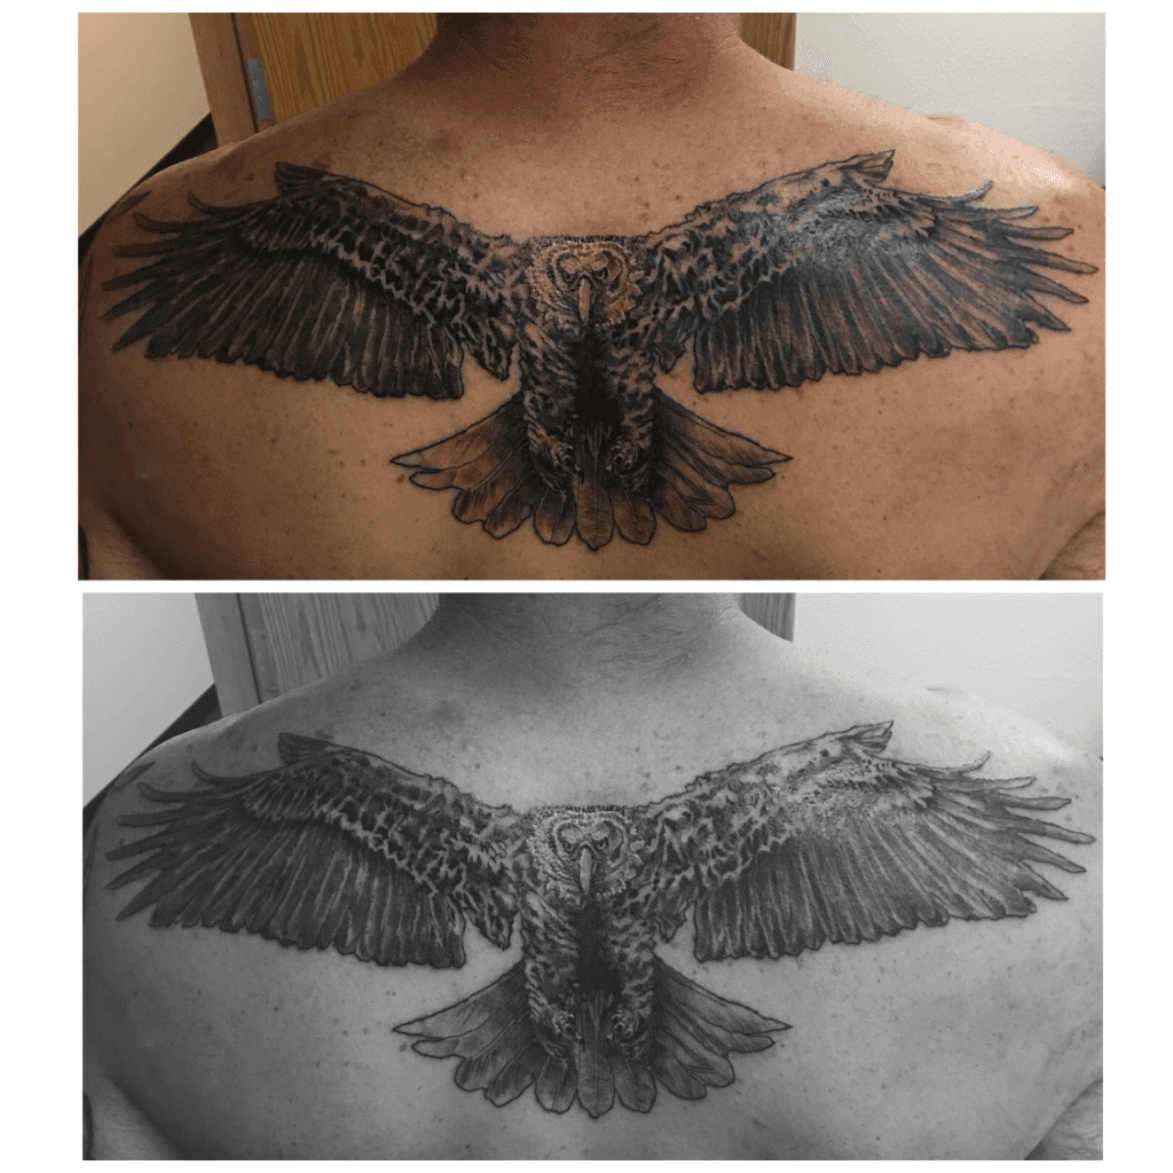 eagle tattoo back